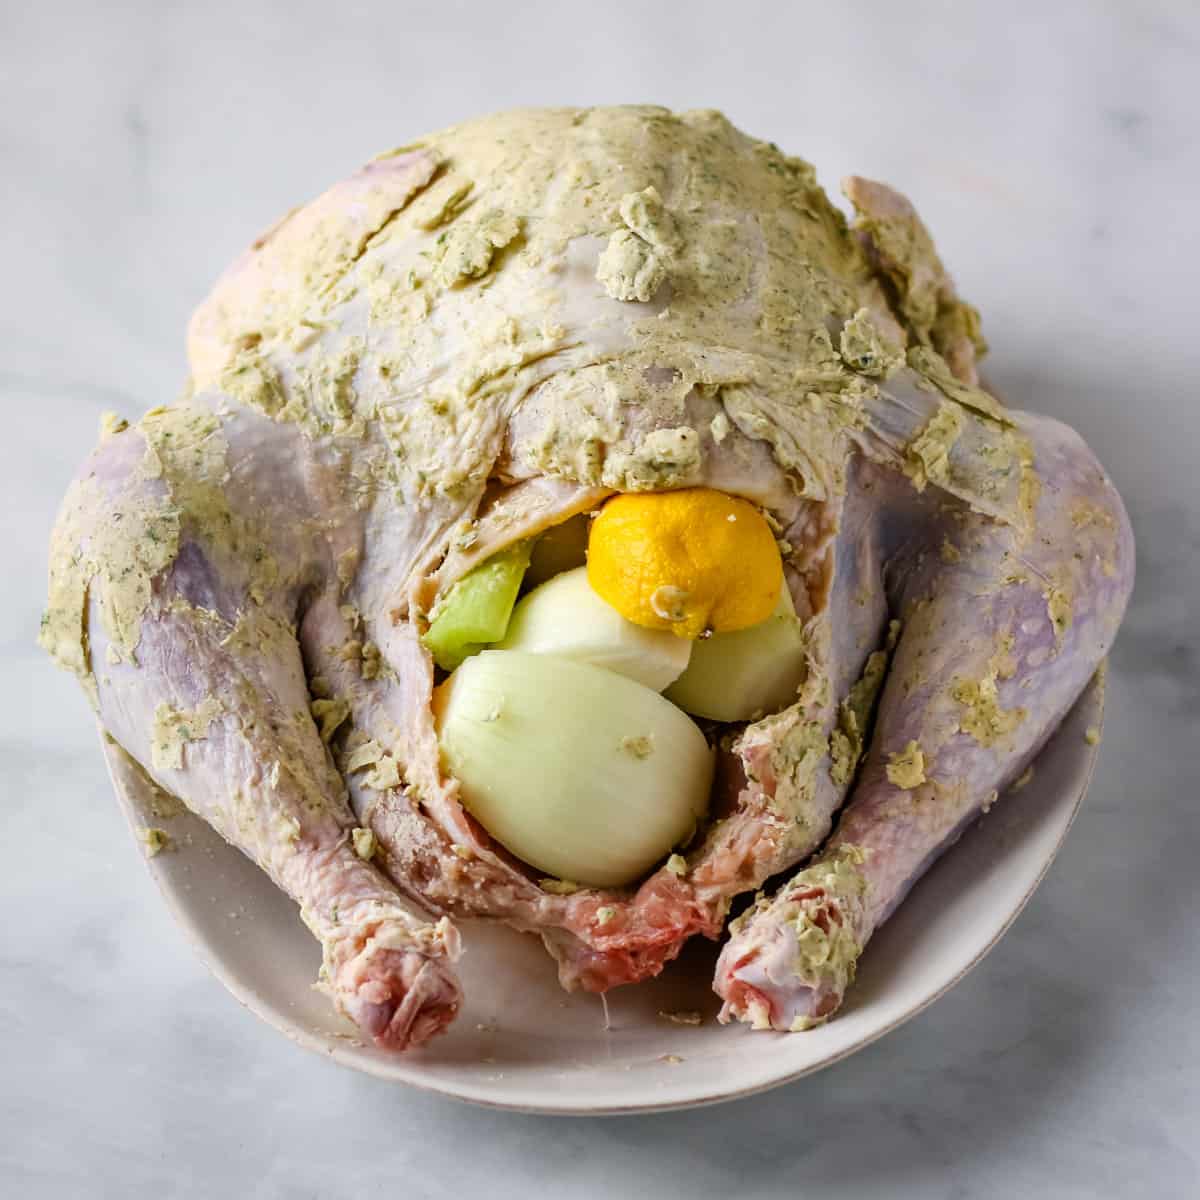 Lemons and an onion stuffed inside the turkey cavity.